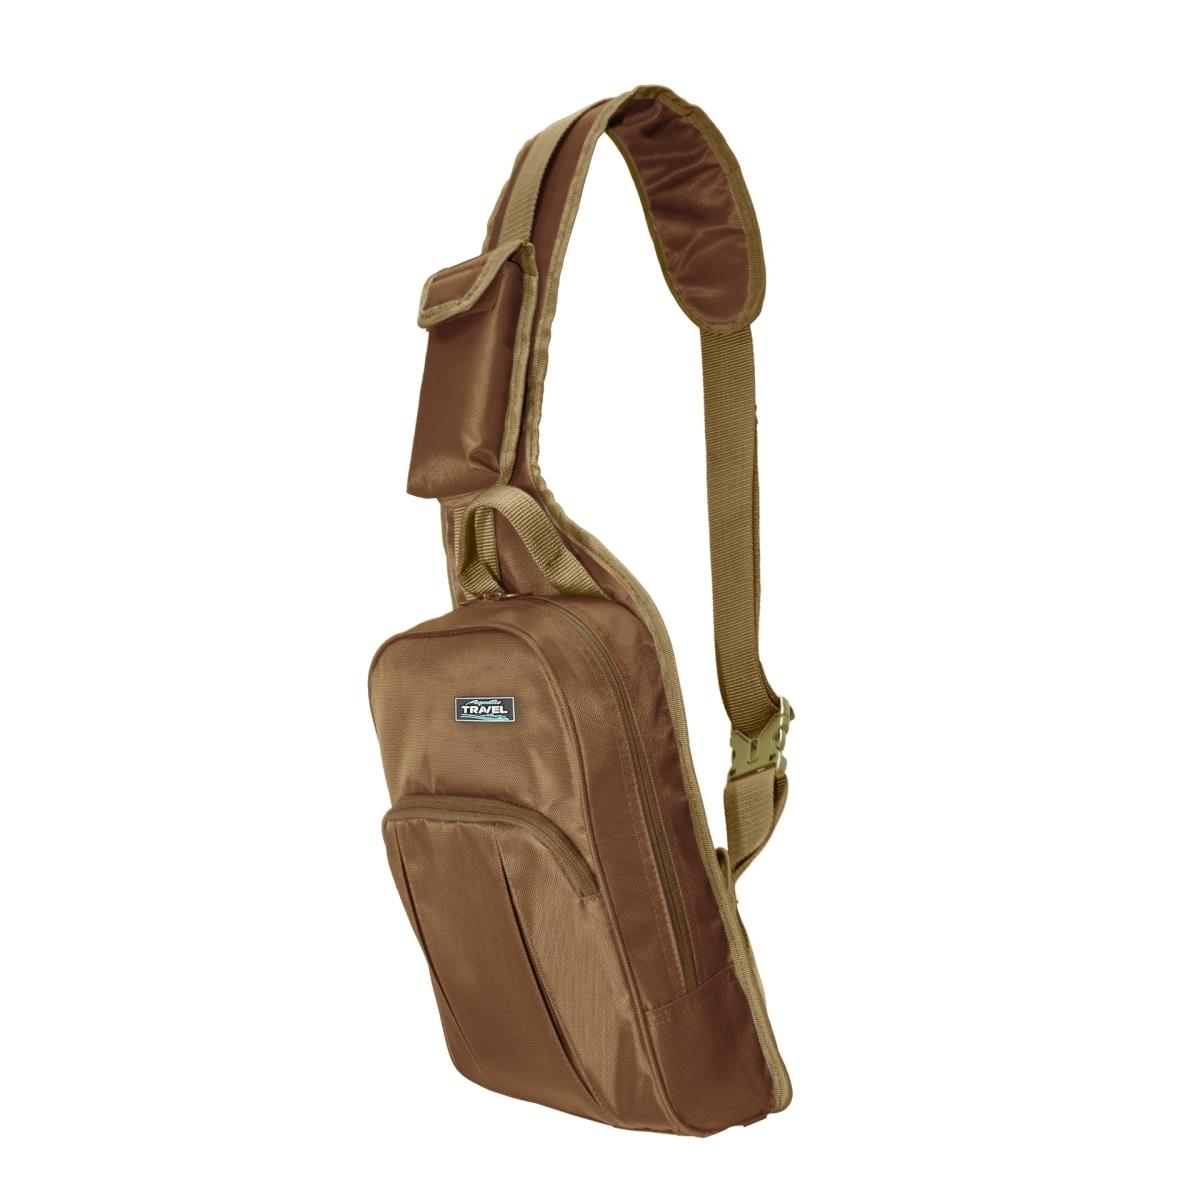 Сумка С-32К коричичневая AQUATIC сумка детская рюкзак